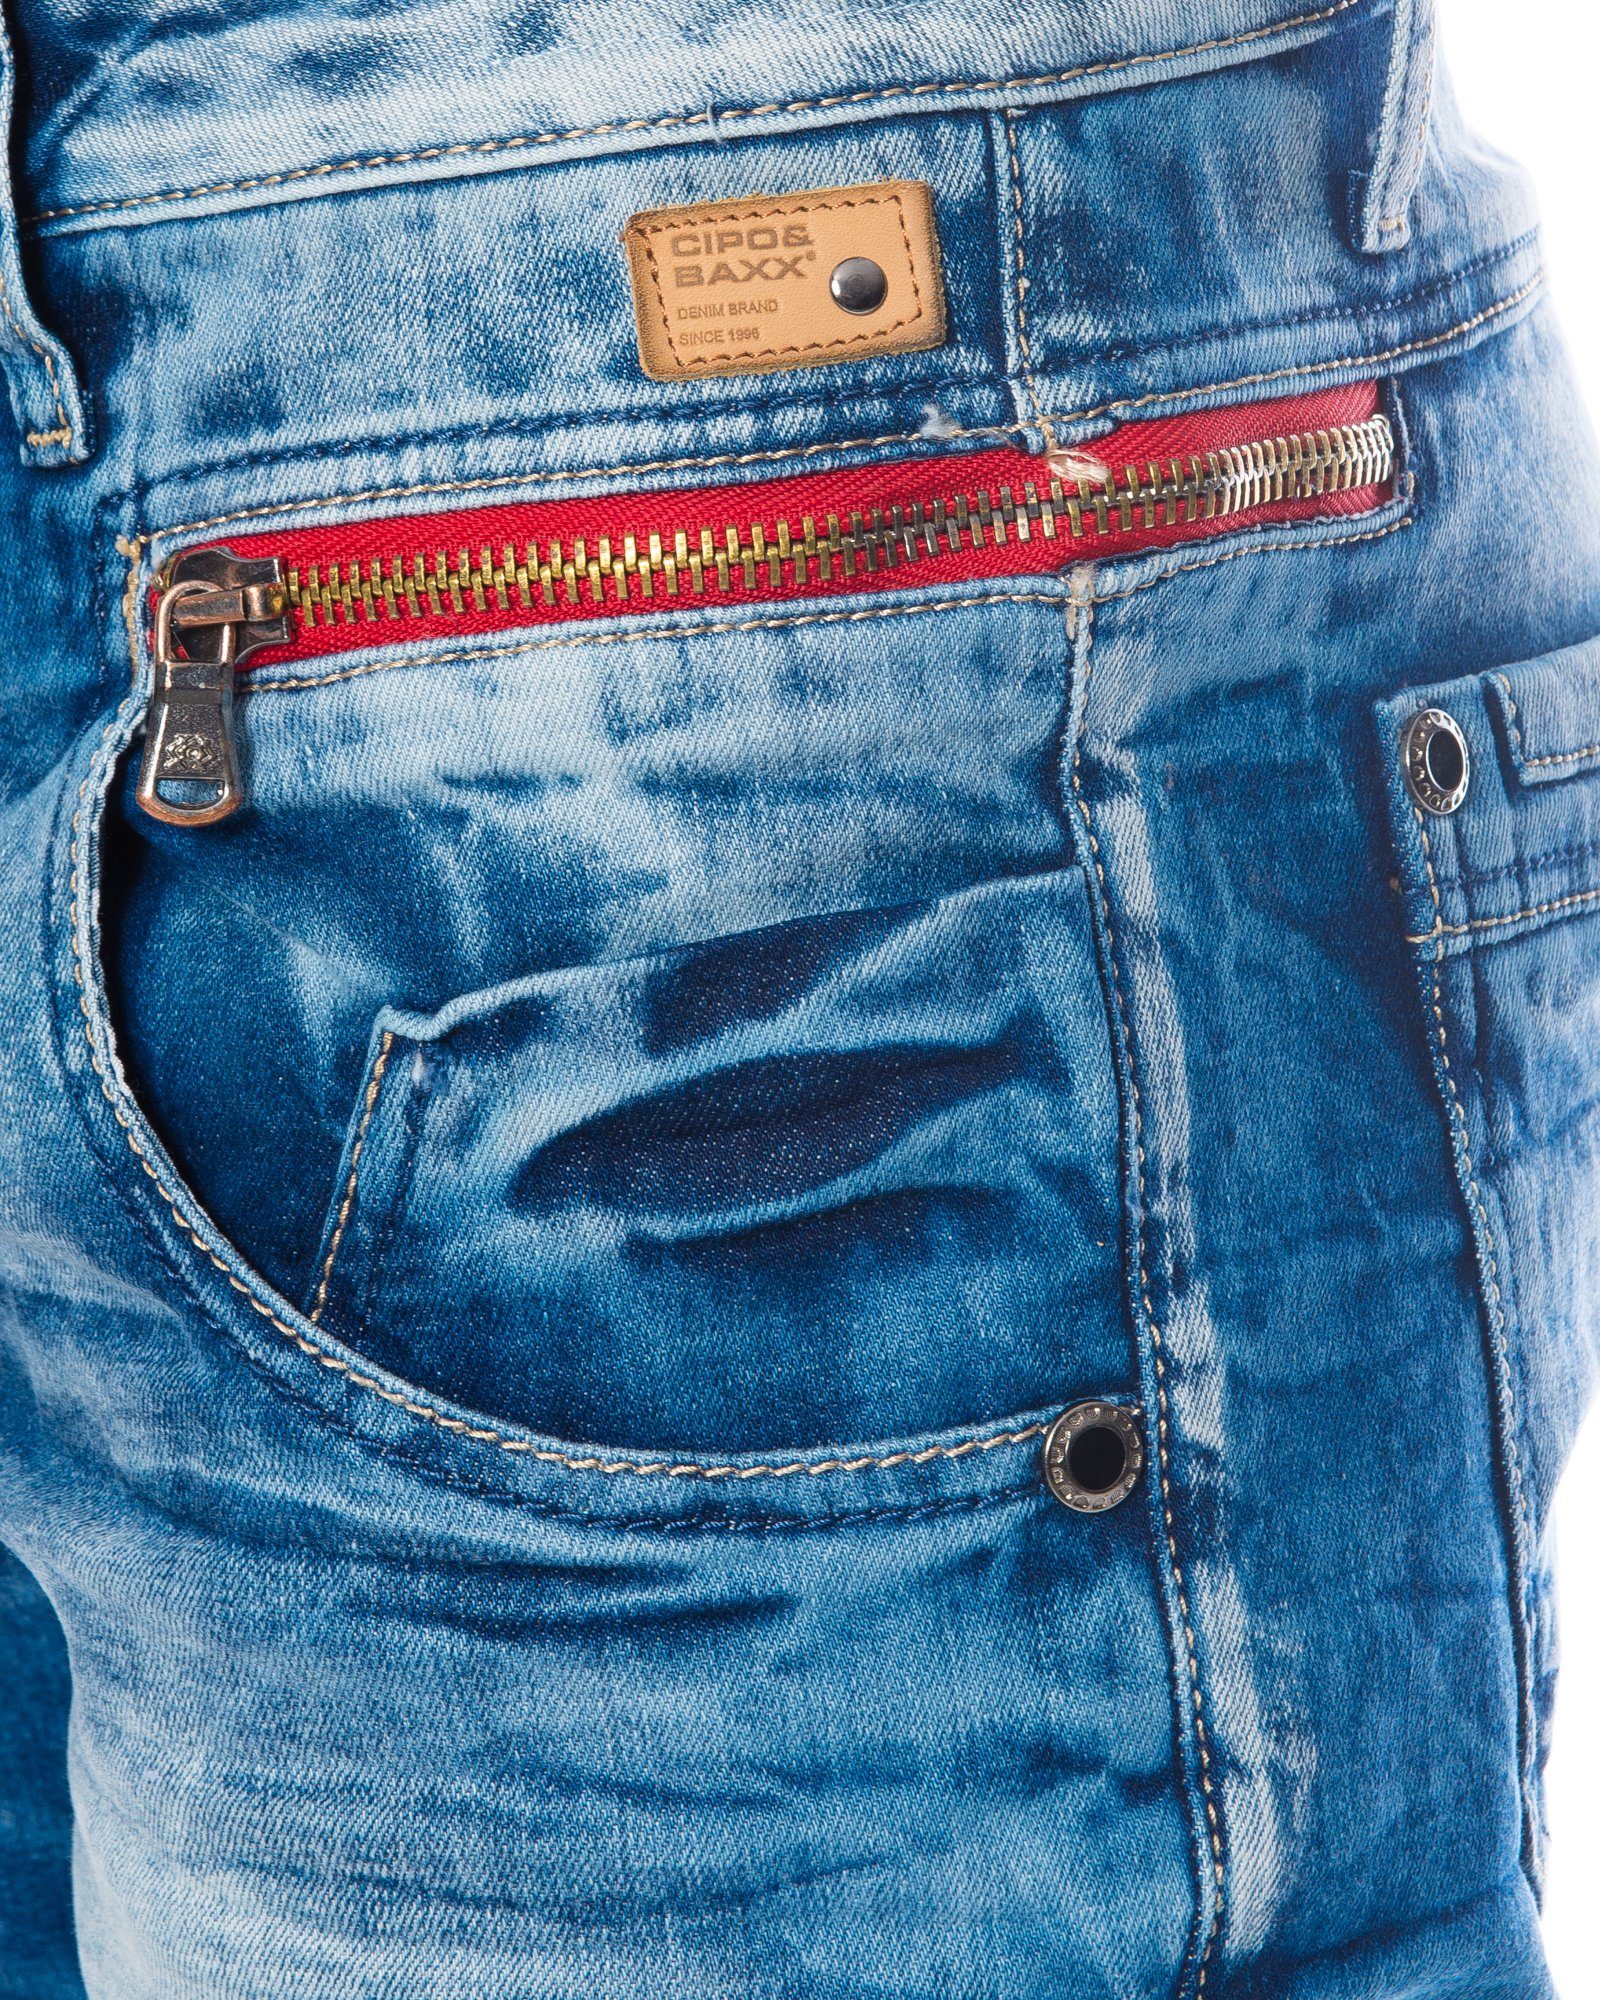 Münztaschen Jeans mit hose und Stoff an modischem Stretch Freizeithose mit Slim-fit-Jeans Baxx Cipo & den farbigem Herren Design